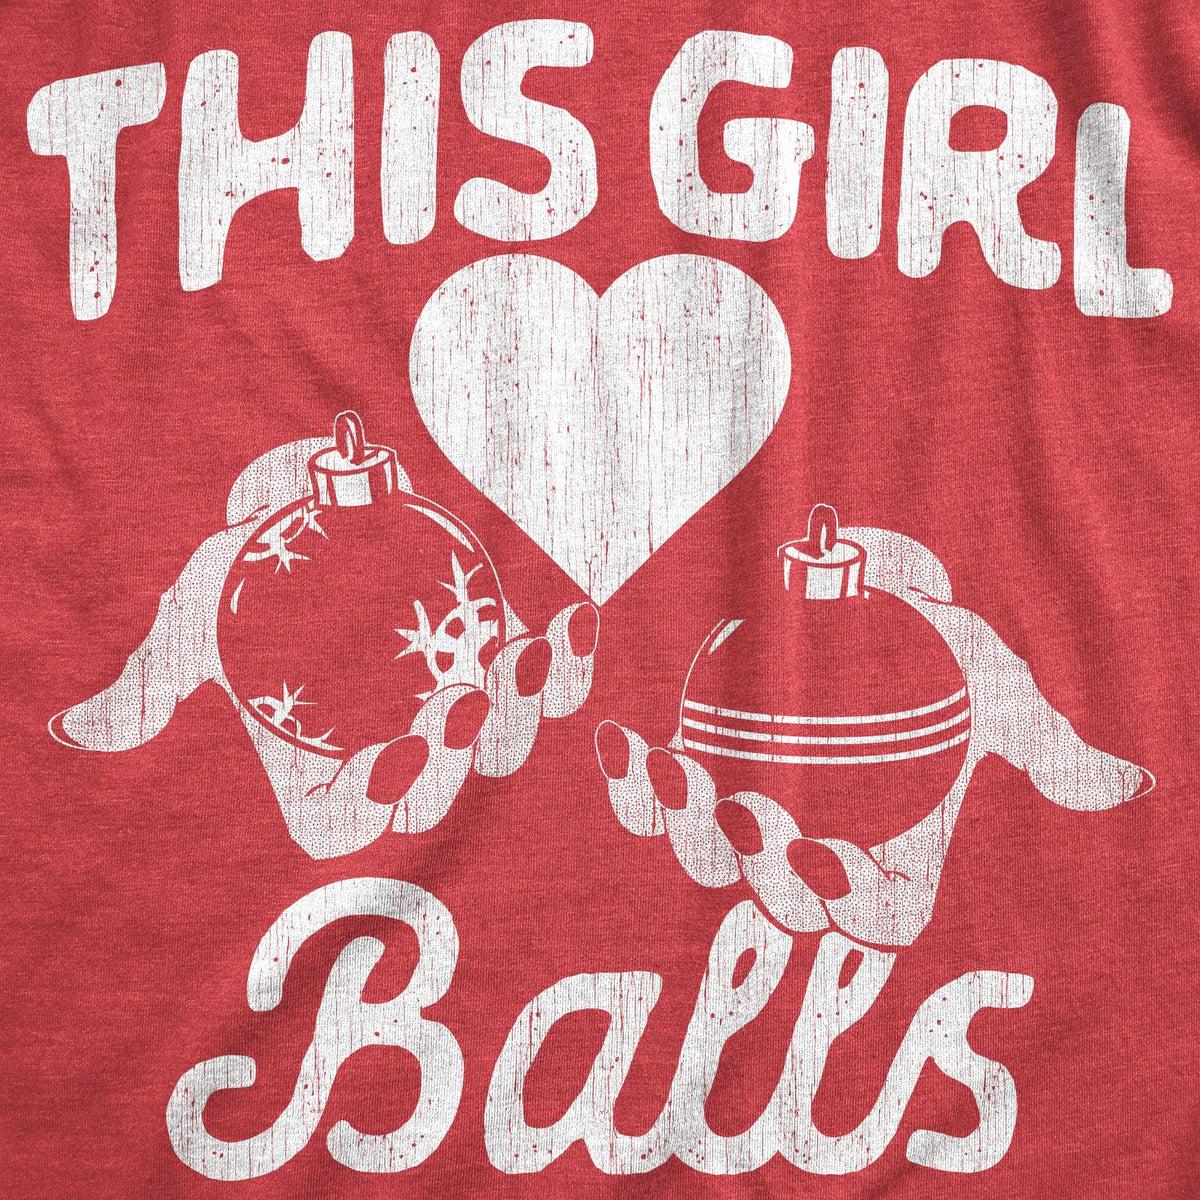 This Girl Balls Women&#39;s Tshirt  -  Crazy Dog T-Shirts